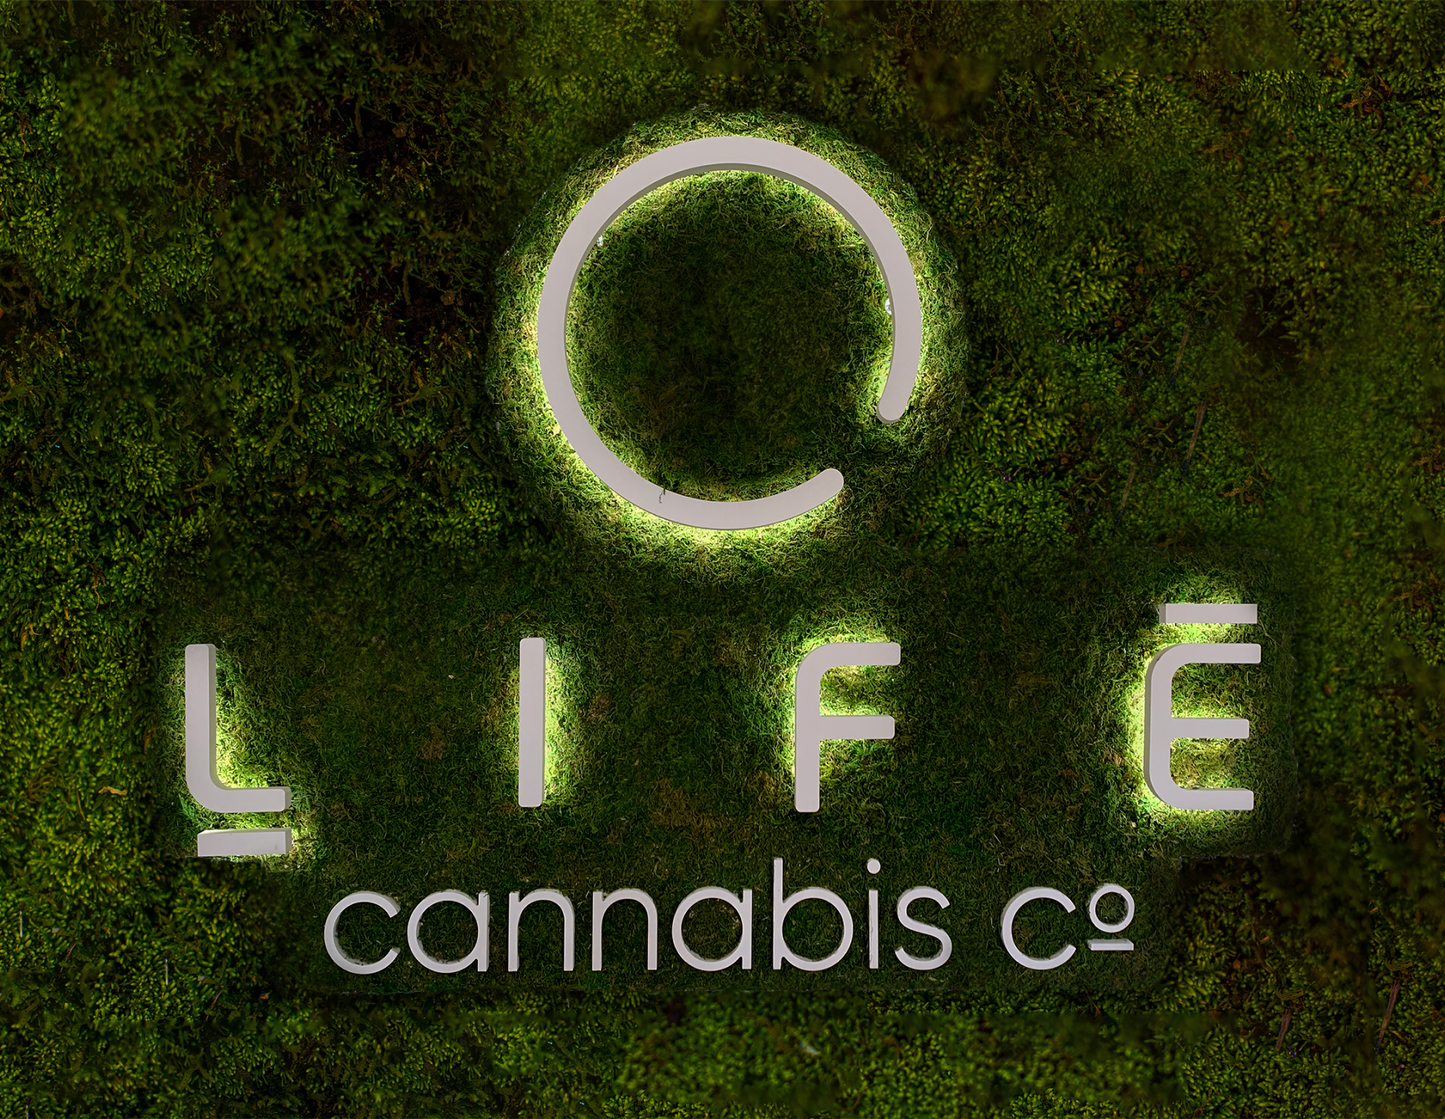 Life Cannabis Co.